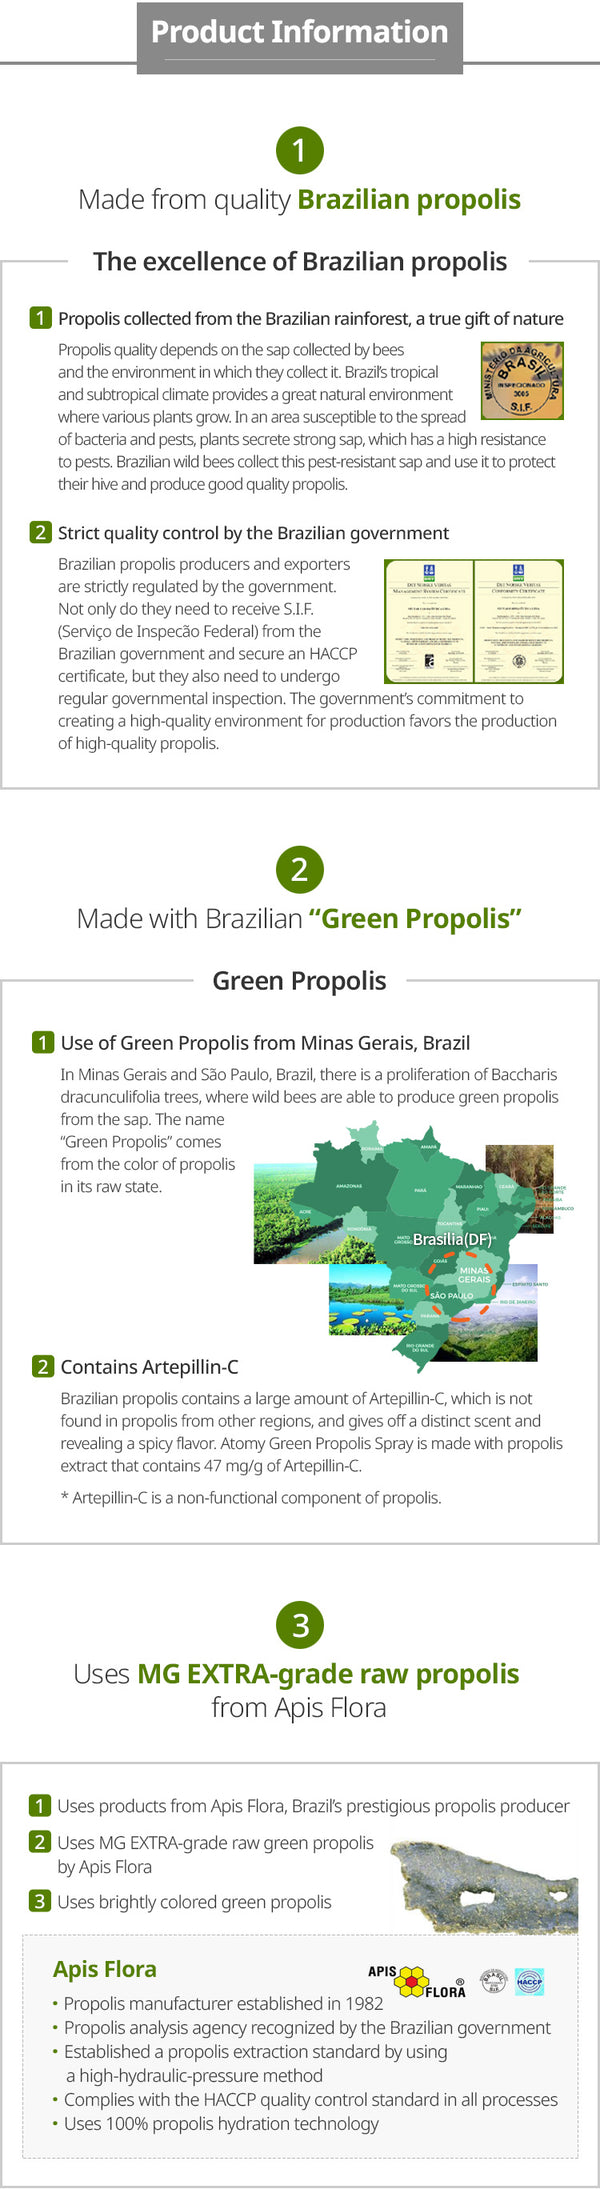 Green Propolis Spray (Dietery Supplement,Mint Flavour , 3-1 FL. OZ (30 mL) Spray Bottles  )